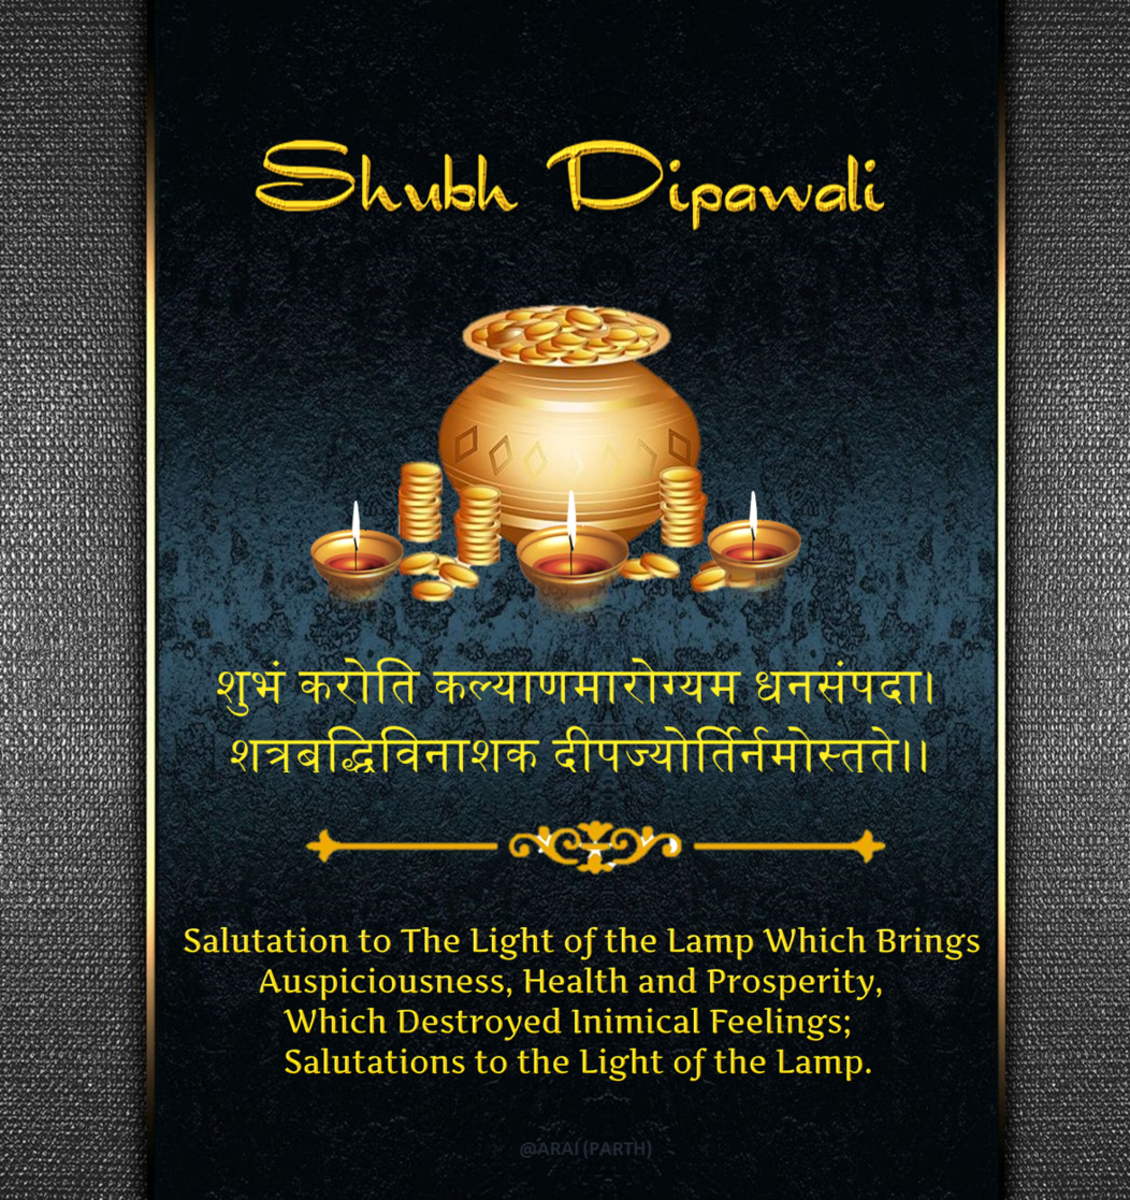 Diwali Wishes in Sanskrit